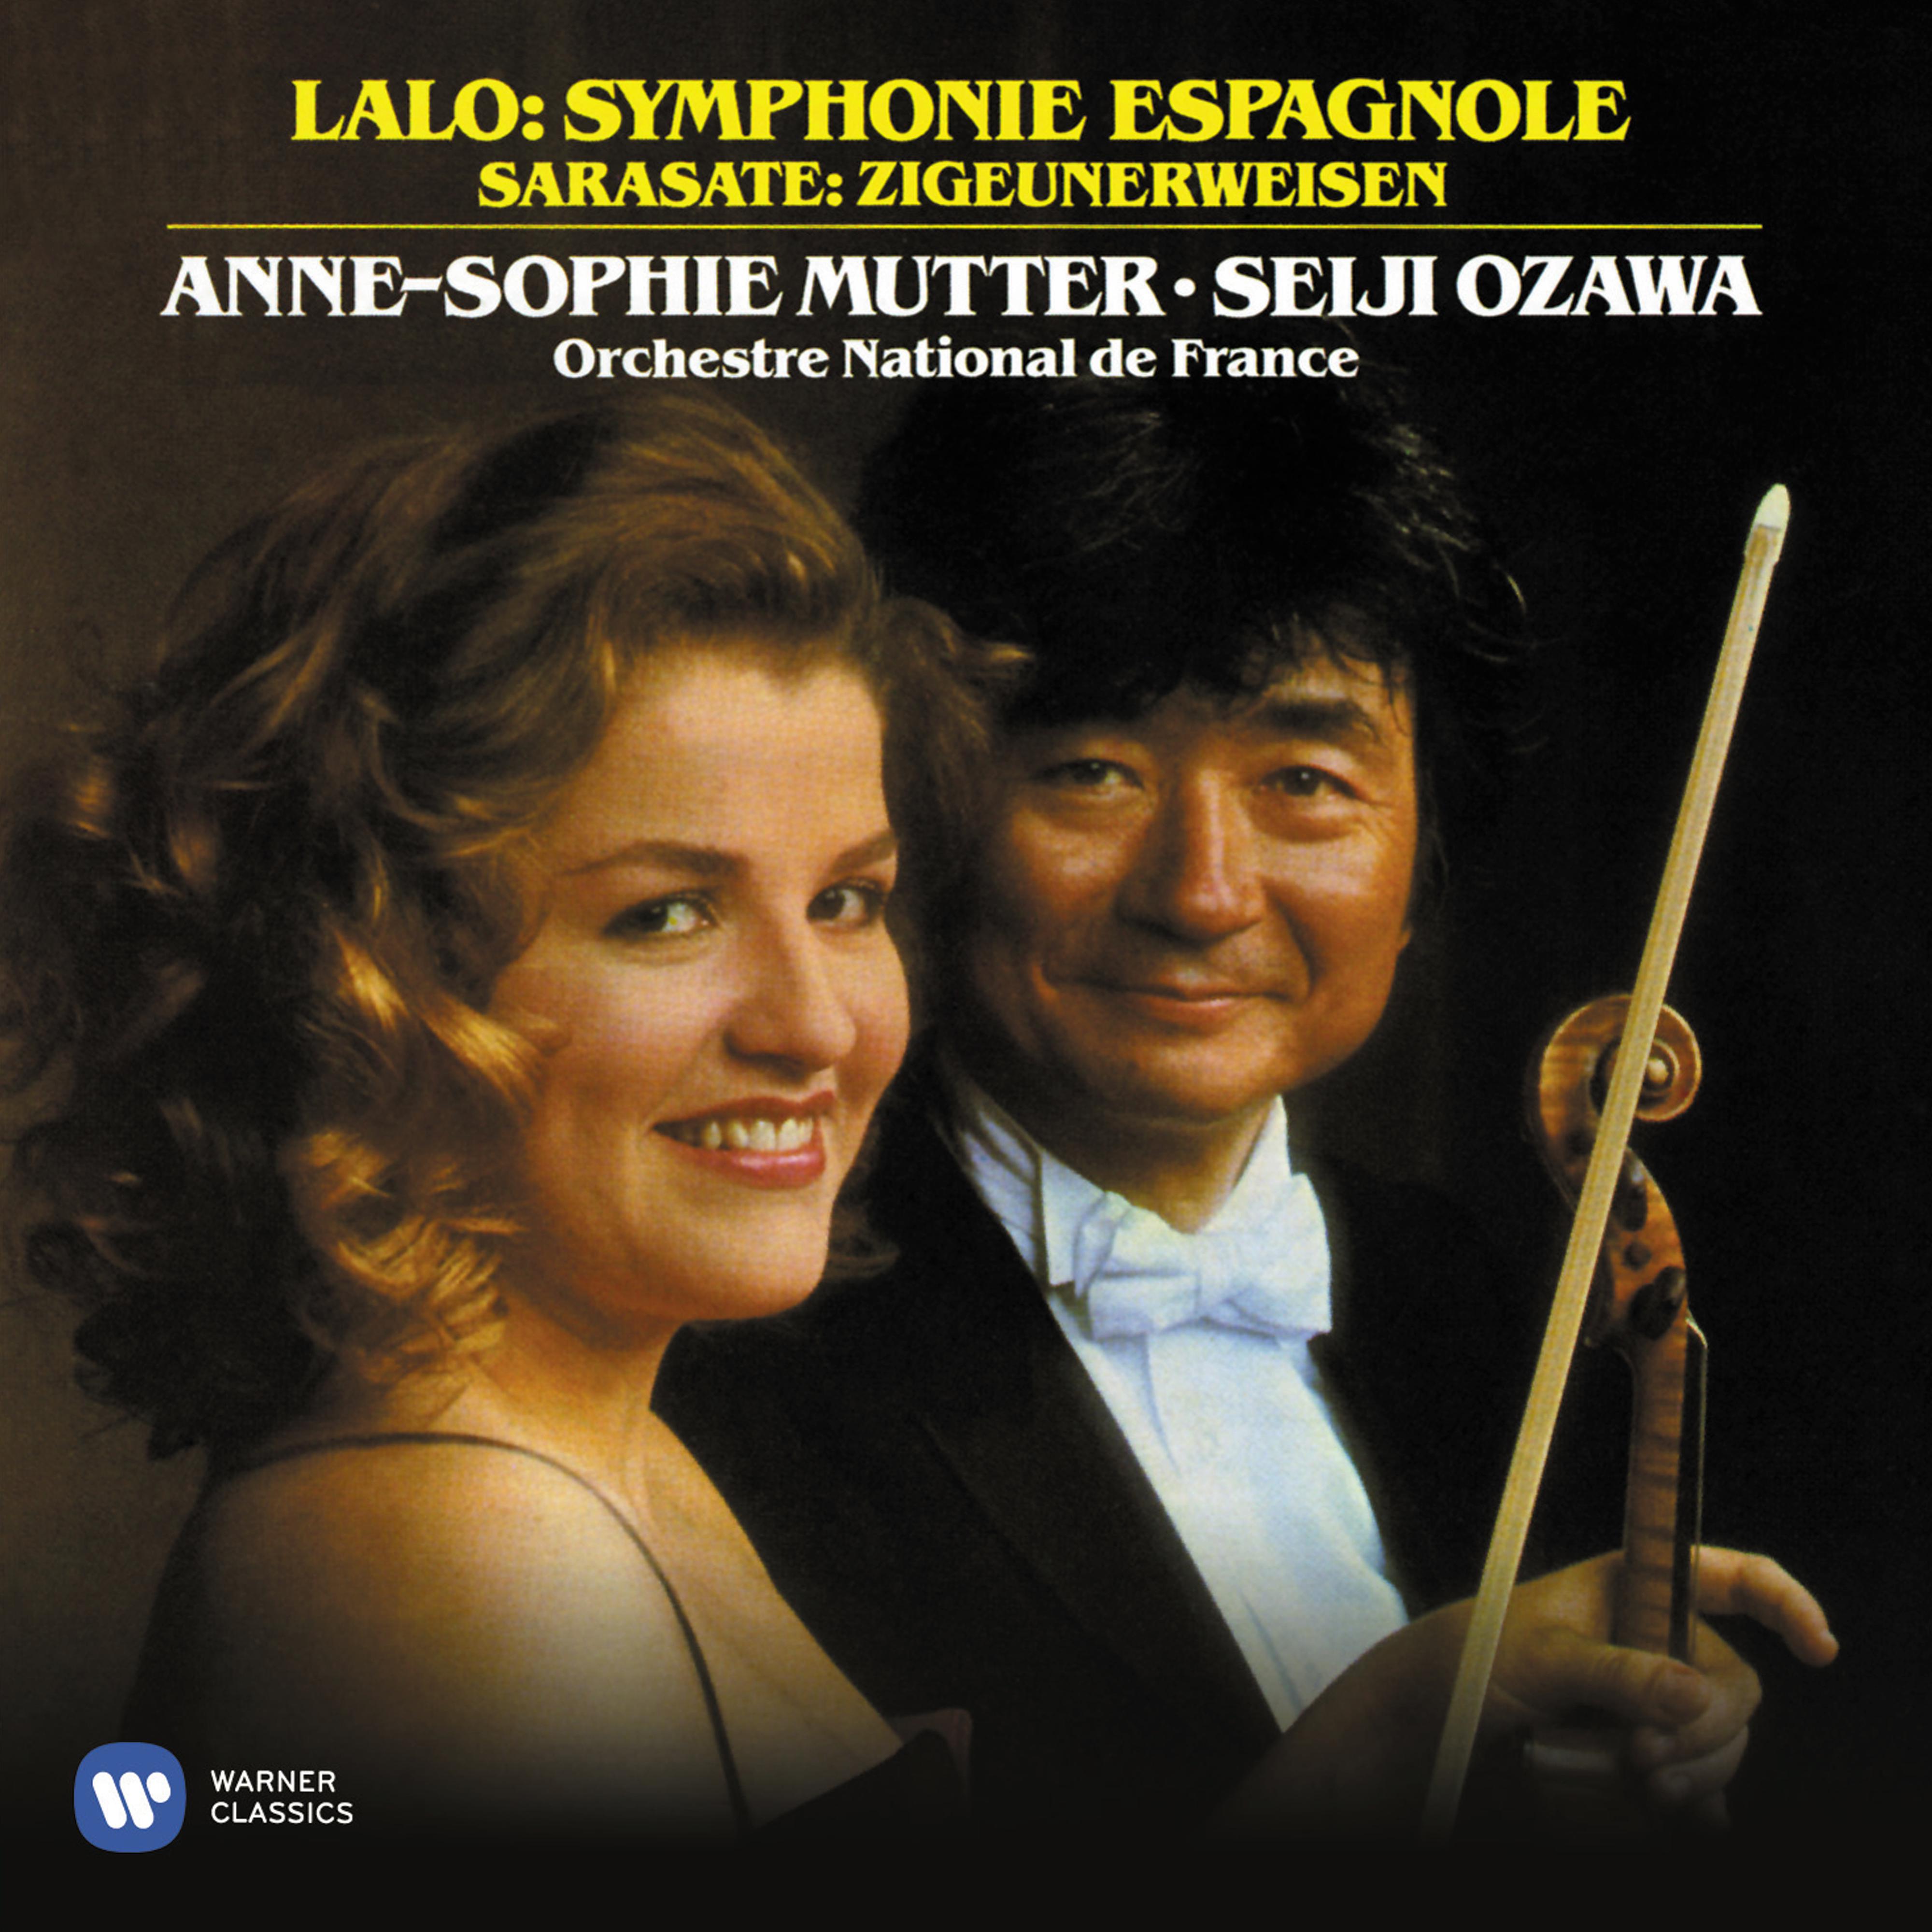 Lalo: Symphonie espagnole, Op. 21 - de Sarasate: Zigeunerweisen, Op. 20